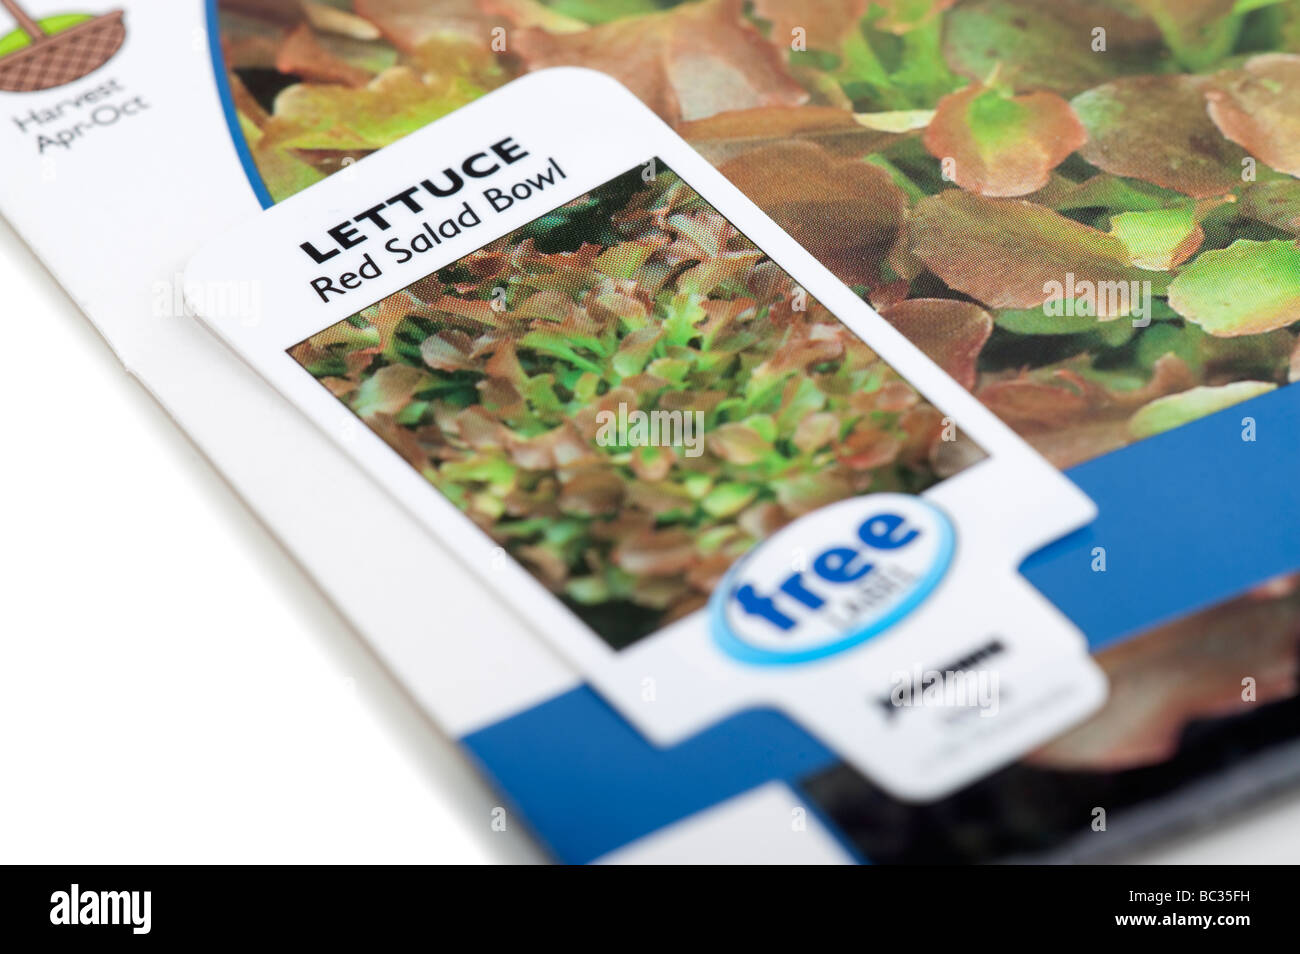 Paket von 'Red Salad Bowl' Salatsamen und label Stockfoto